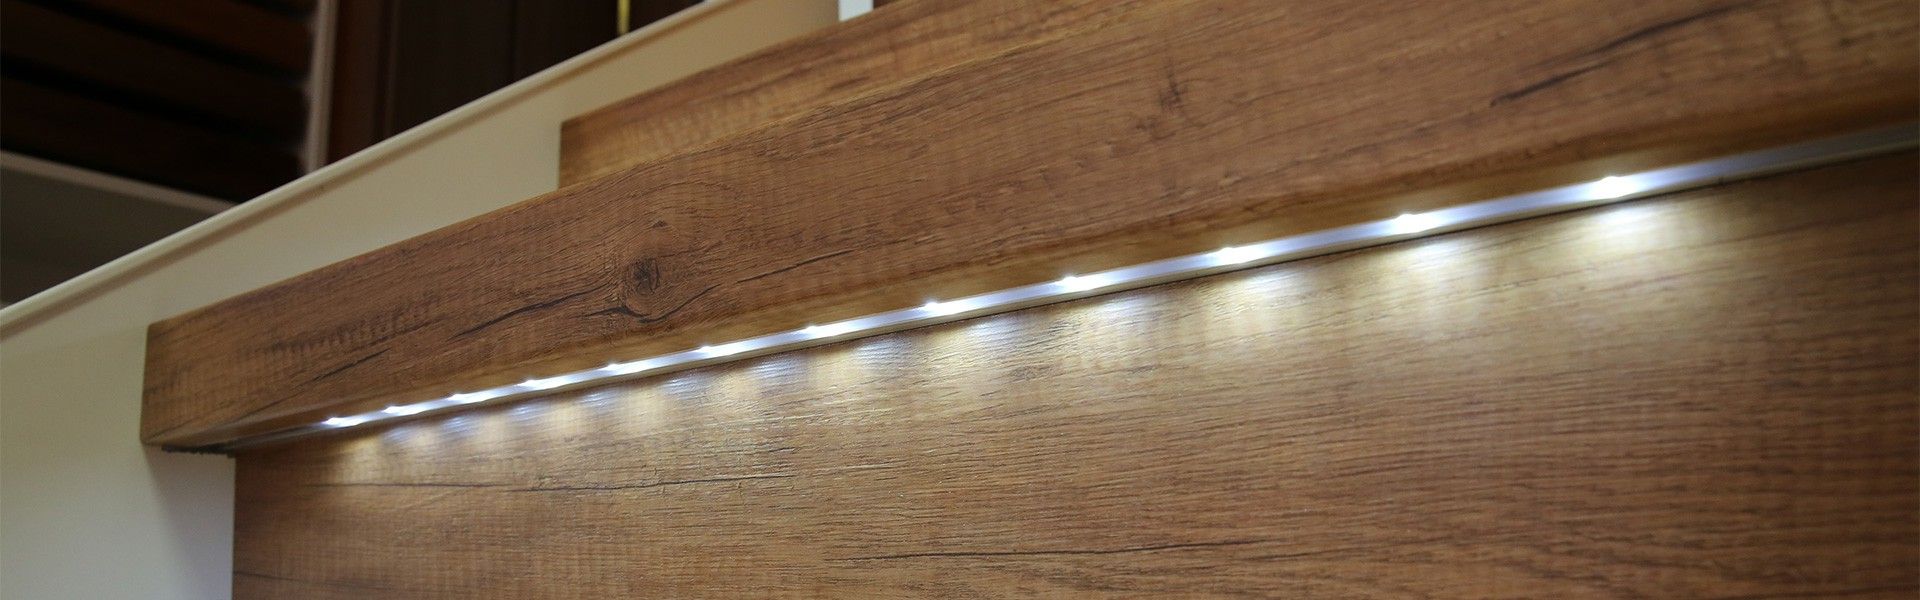 Integrierte Beleuchtung in sanierter Treppenstufe